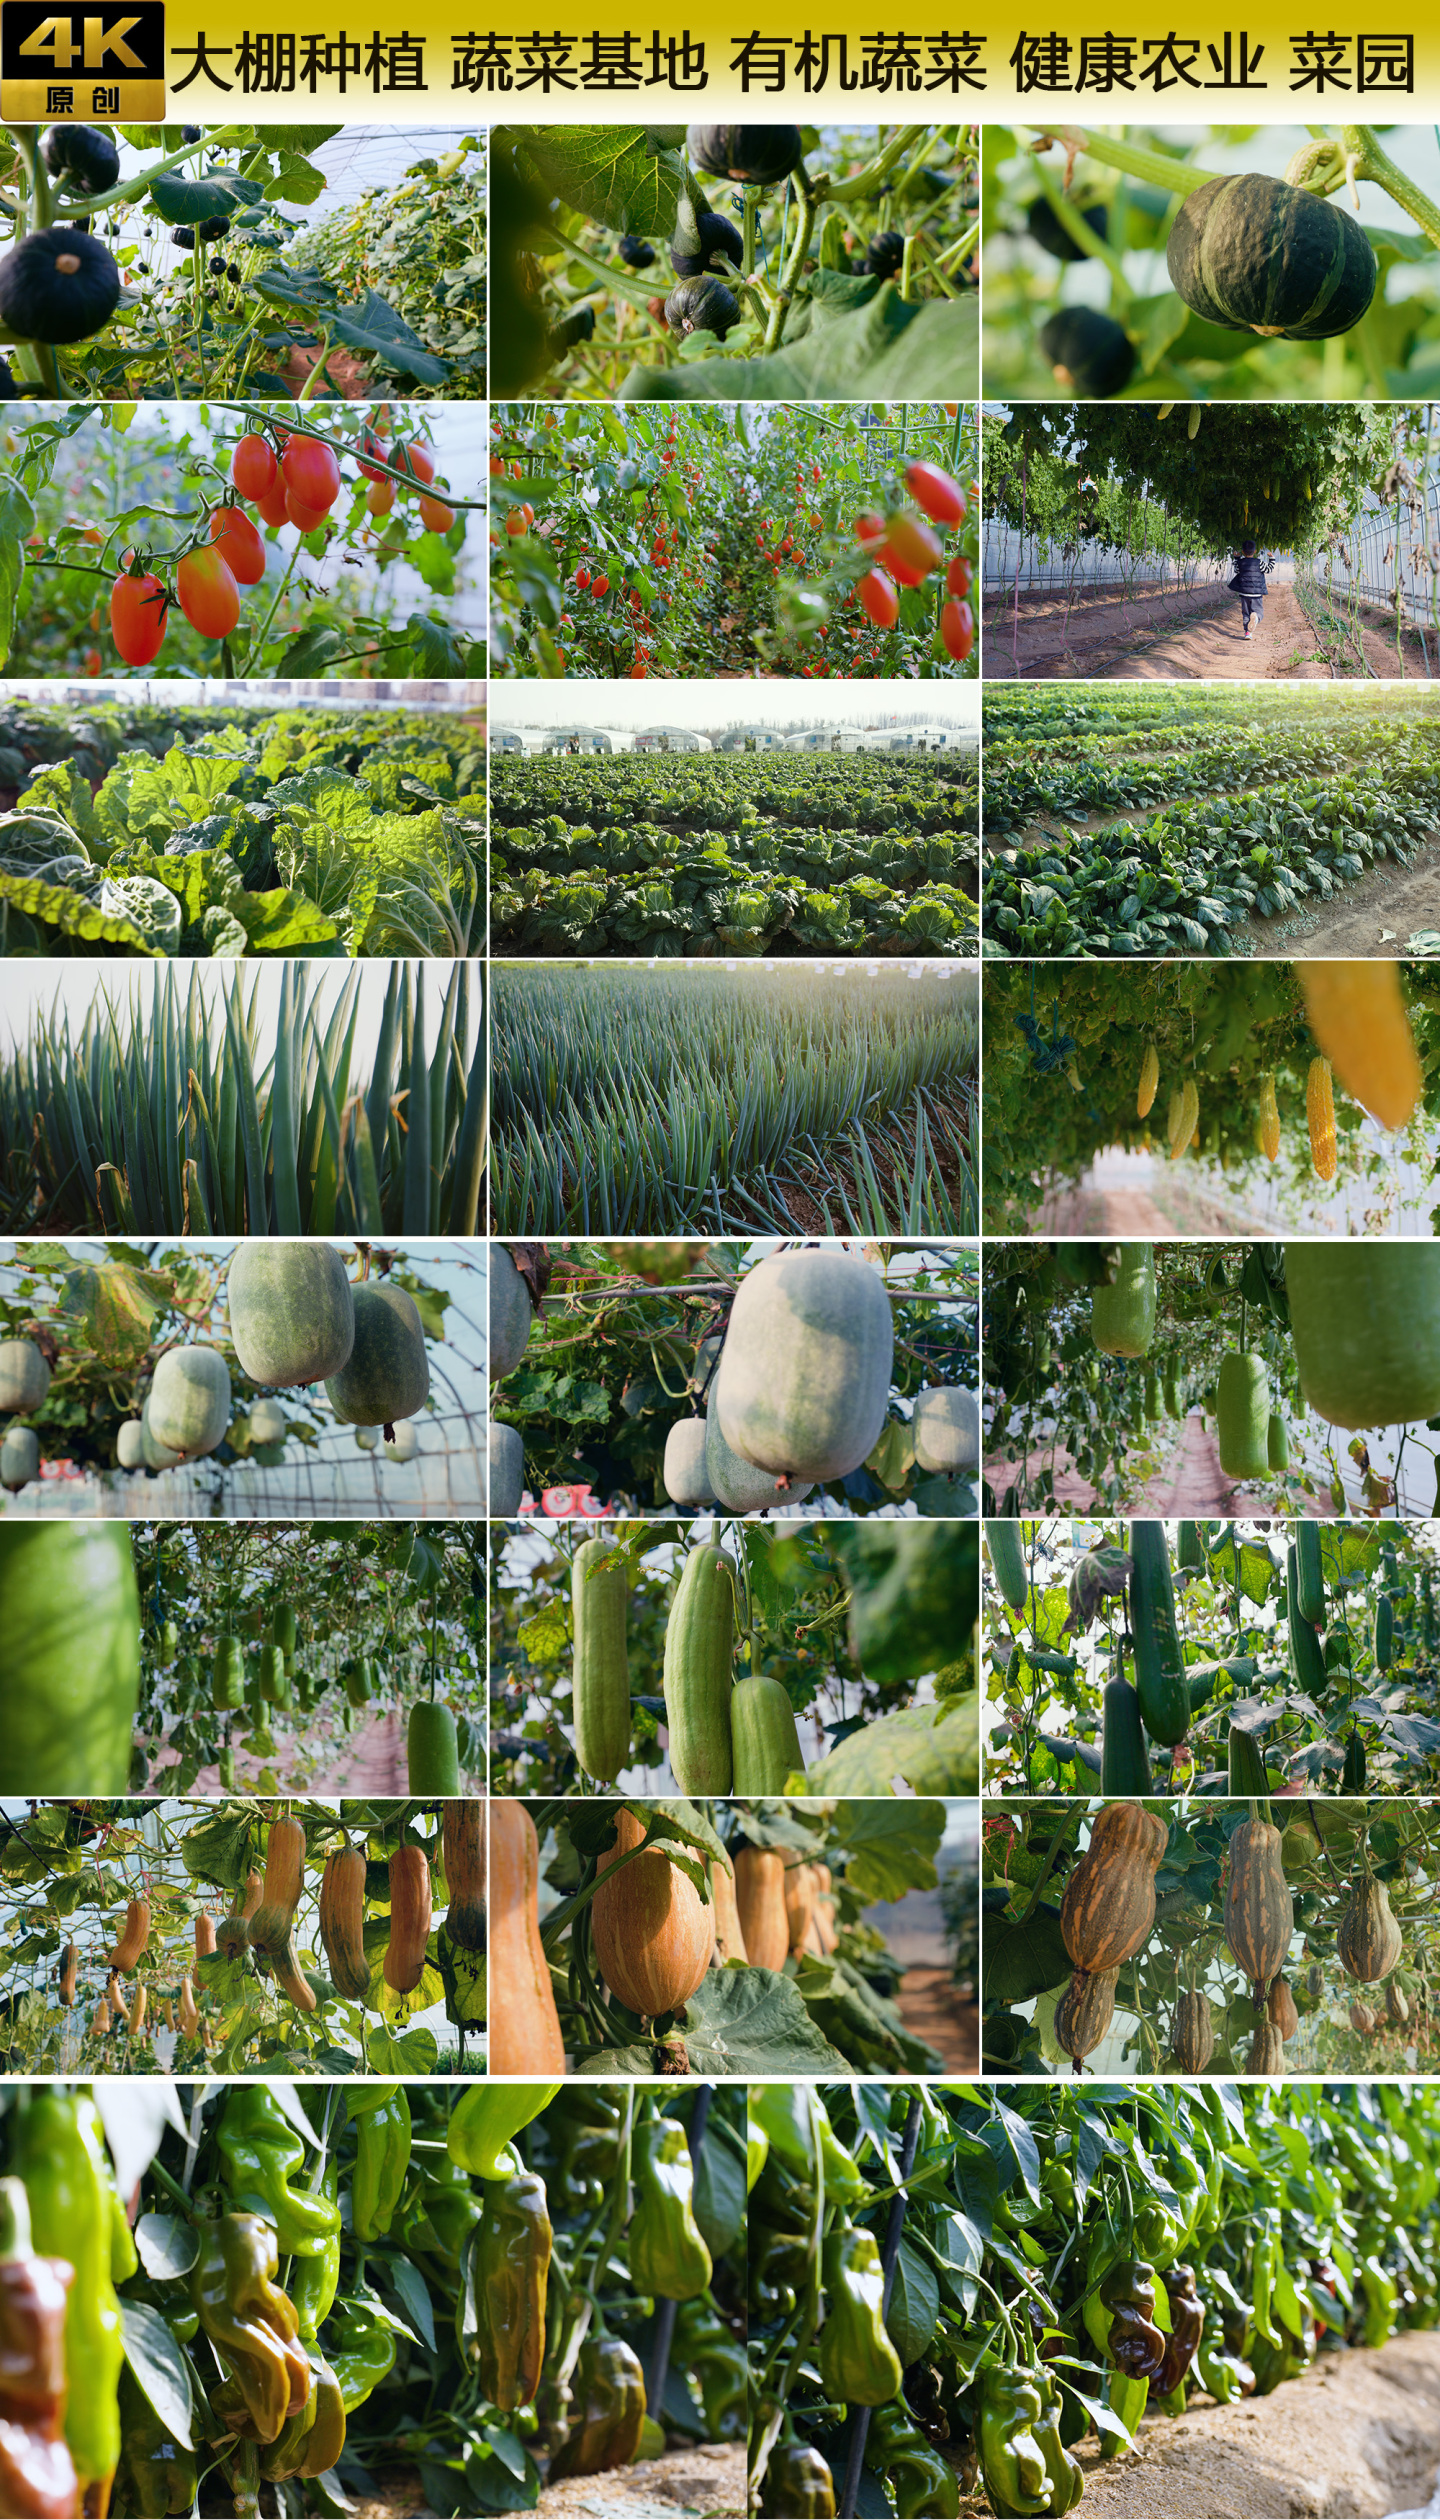 大棚种植 蔬菜基地 有机蔬菜 健康农业